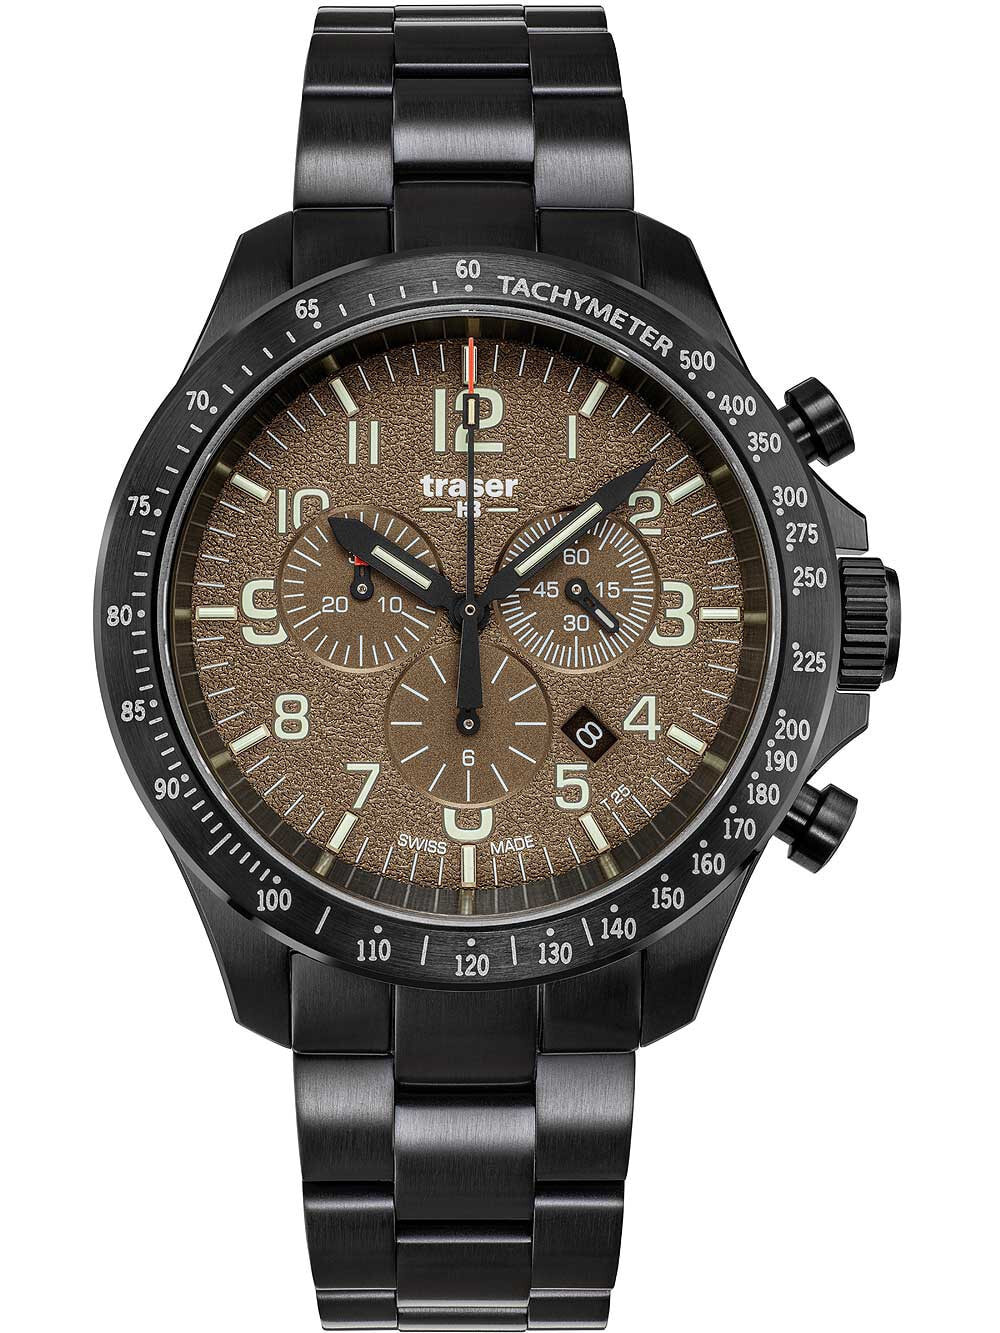 Мужские наручные часы с черным браслетом Traser H3 109460 P67 Officer chrono khaki steel 46mm 10ATM